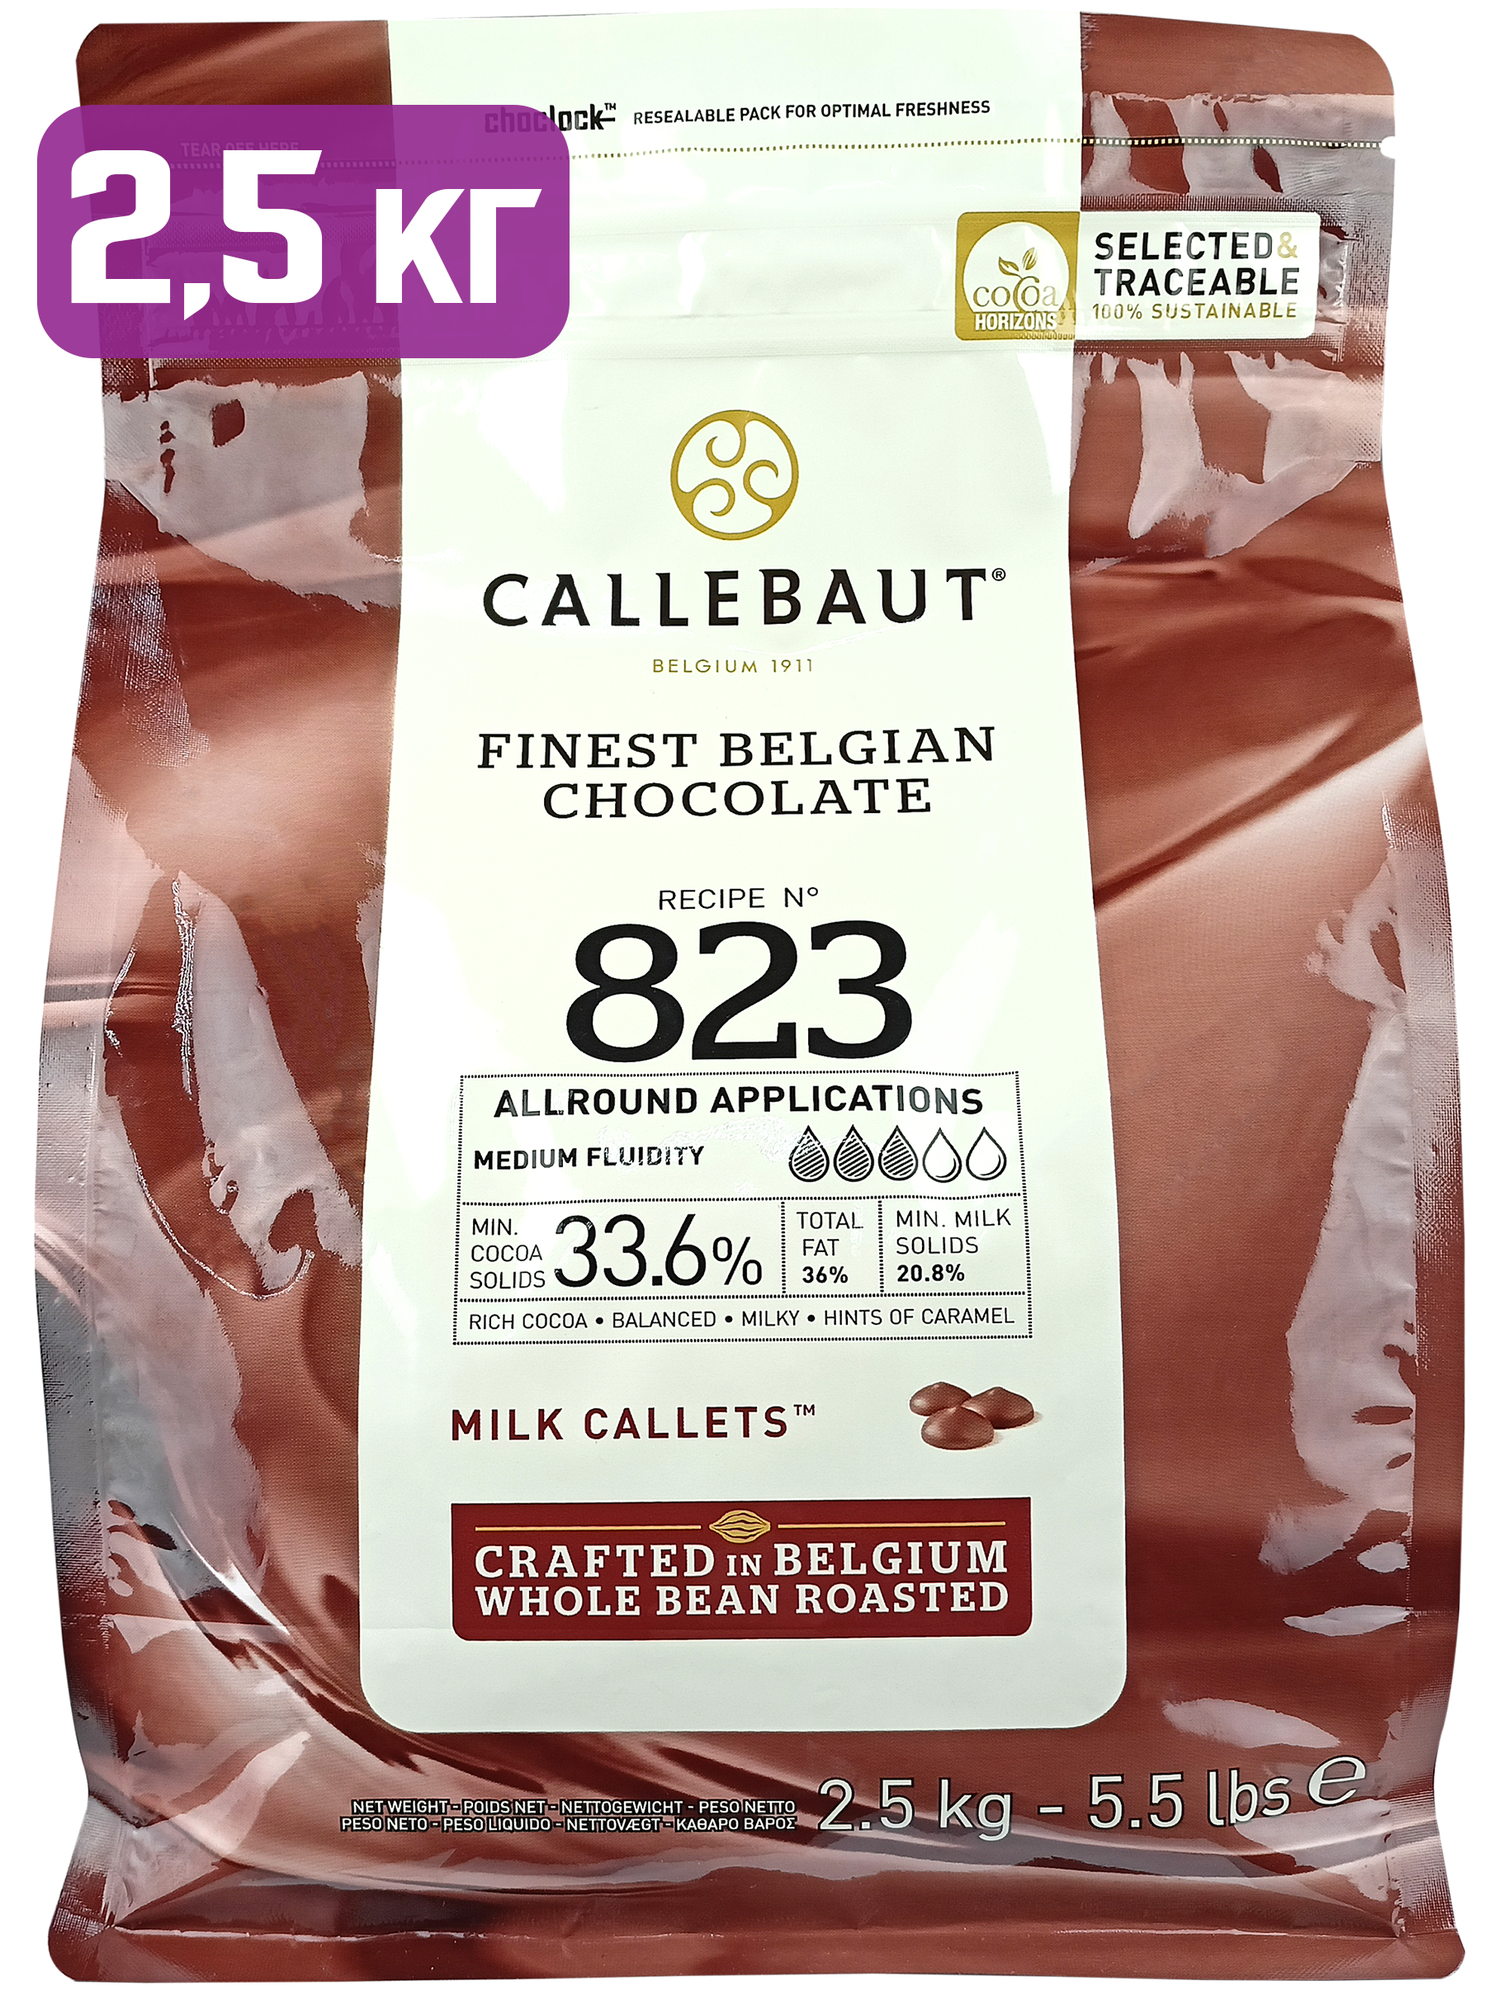 Молочный шоколад 33,6% Callebaut в каллетах, 2,5 кг, 823-RT-U71